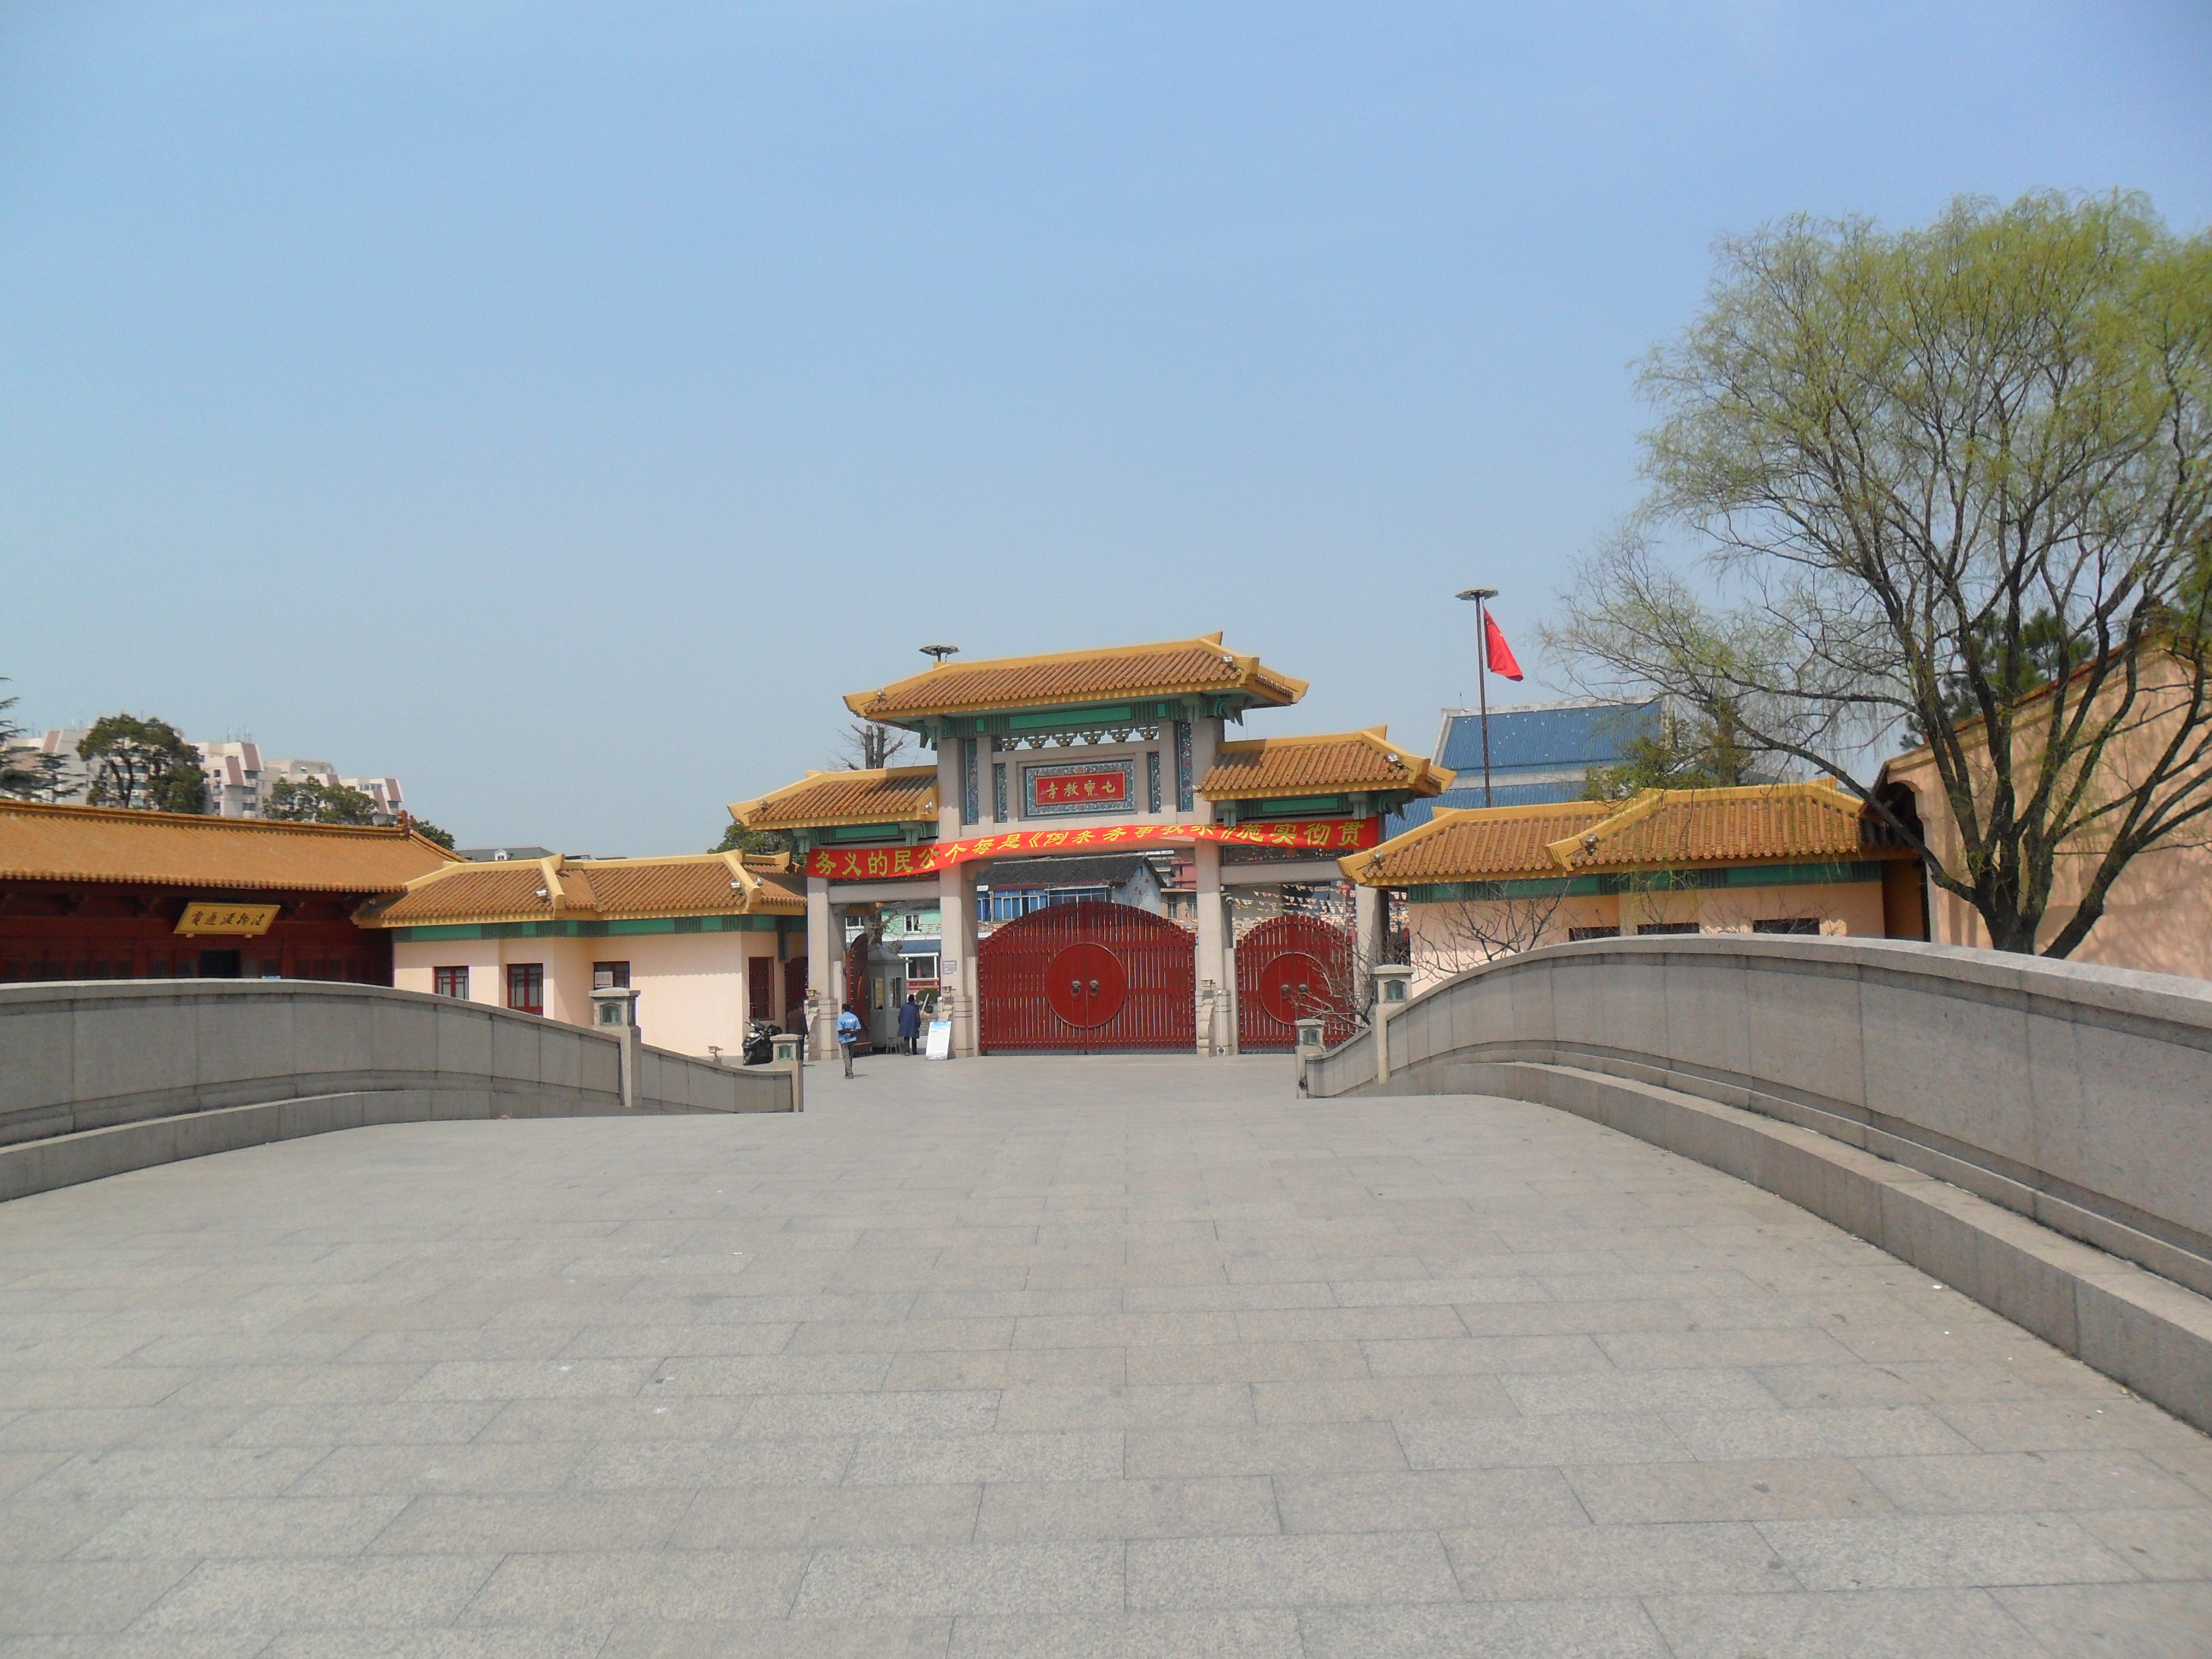 【携程攻略】上海七宝教寺景点,七宝教寺移址重建于2002年，七宝古镇的东侧新镇路旁；寺庙占地颇大，…